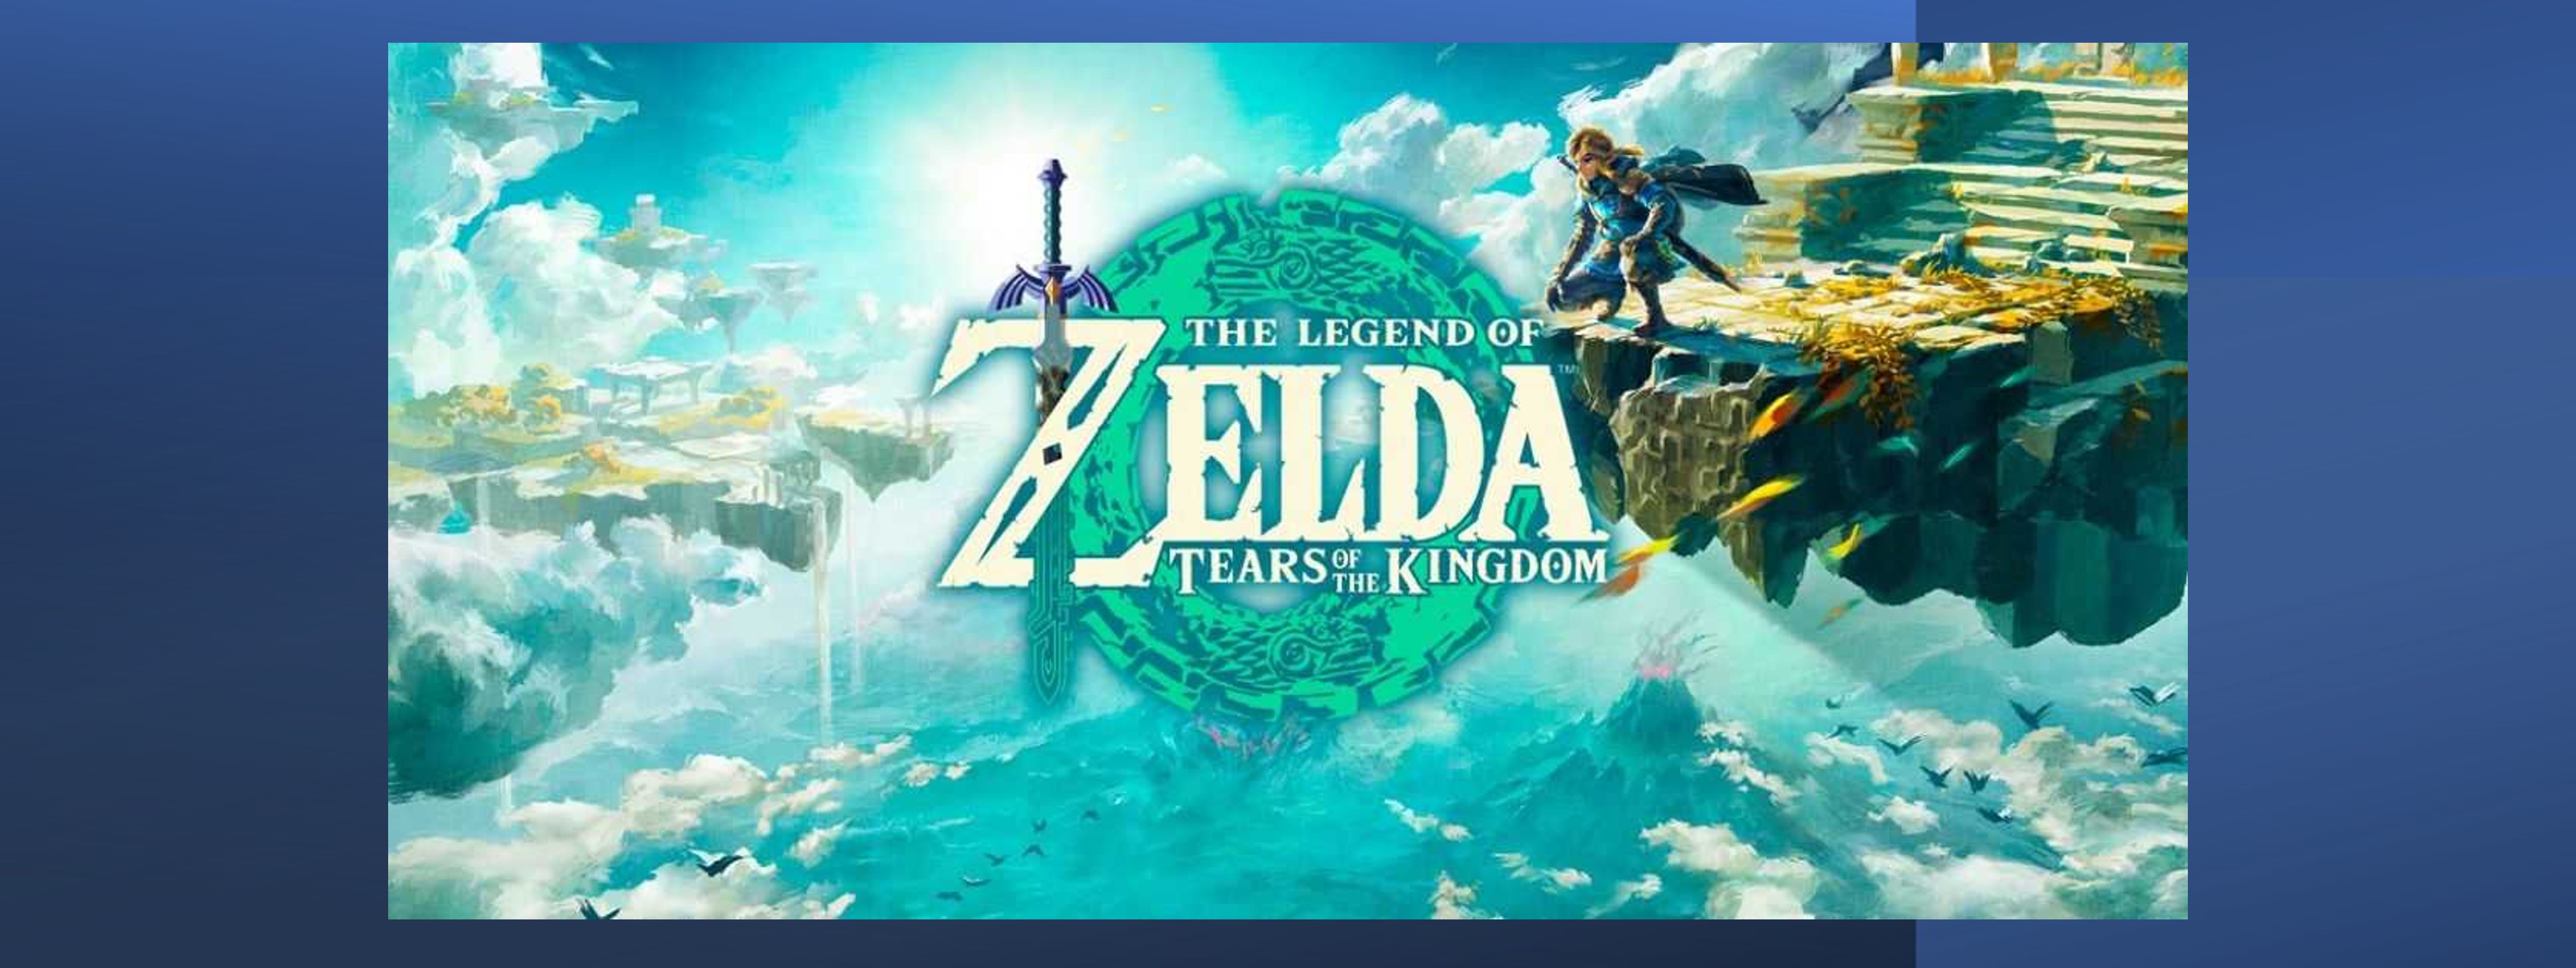 The Legend of Zelda: Link's Awakening (Video Game 1993) - Trivia - IMDb